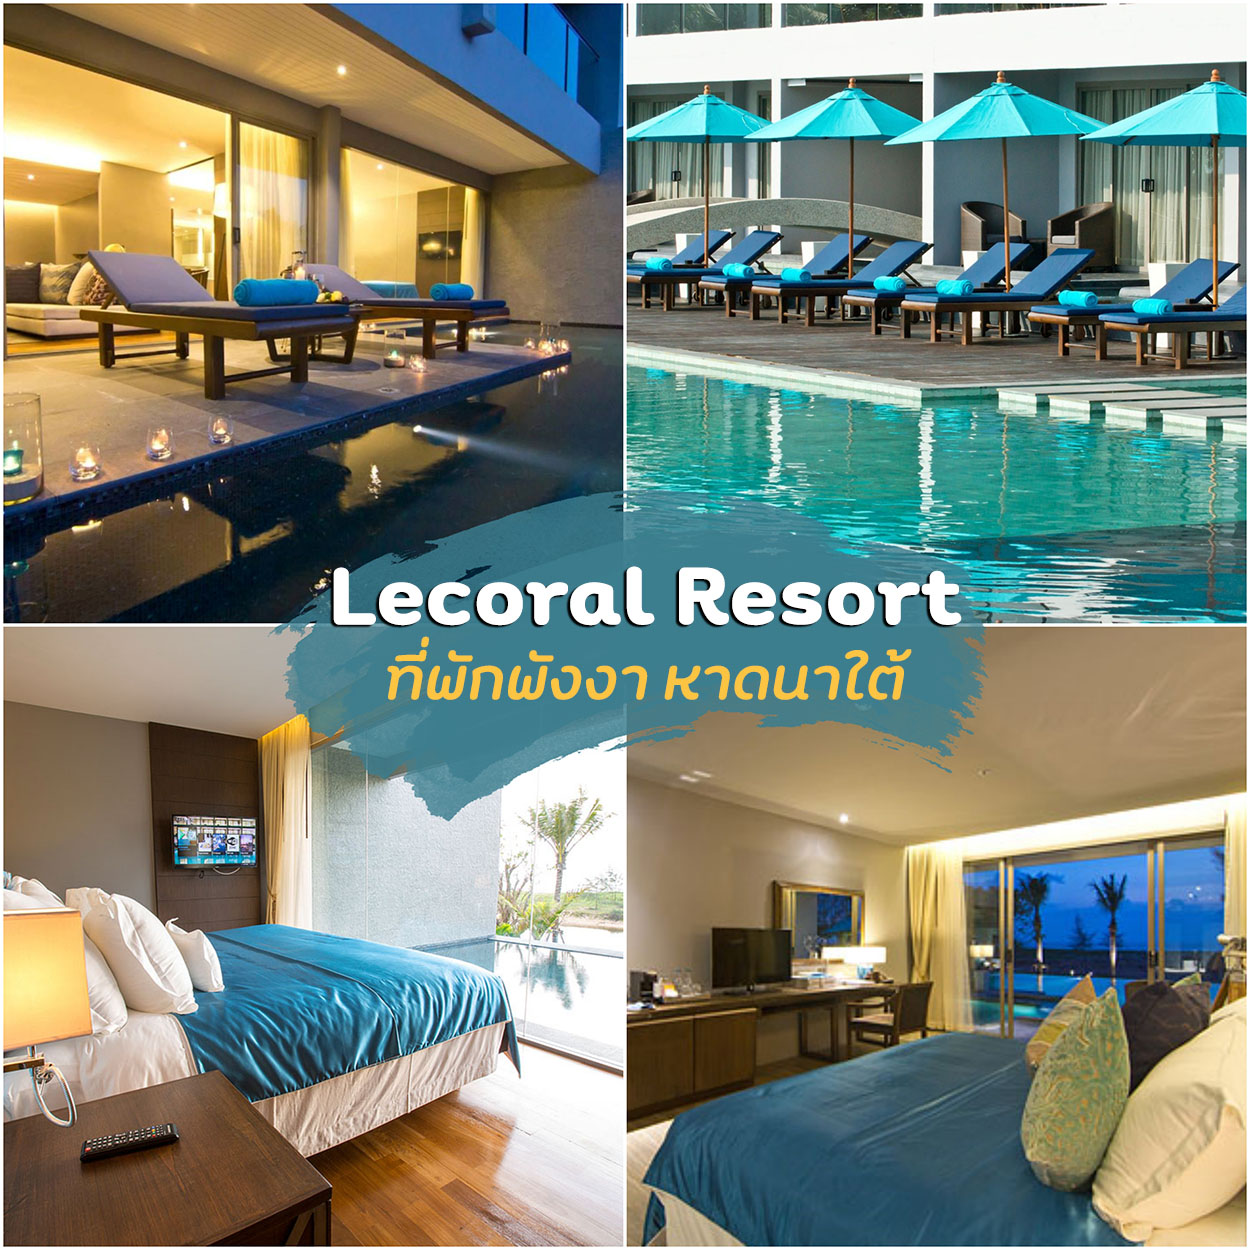 โรงแรม Lecoral Resort ที่พักพังงา หาดนาใต้ รีโนเวทใหม่สวยๆใกล้สนามบินภูเก็ต ต้องไปเช็คอิน